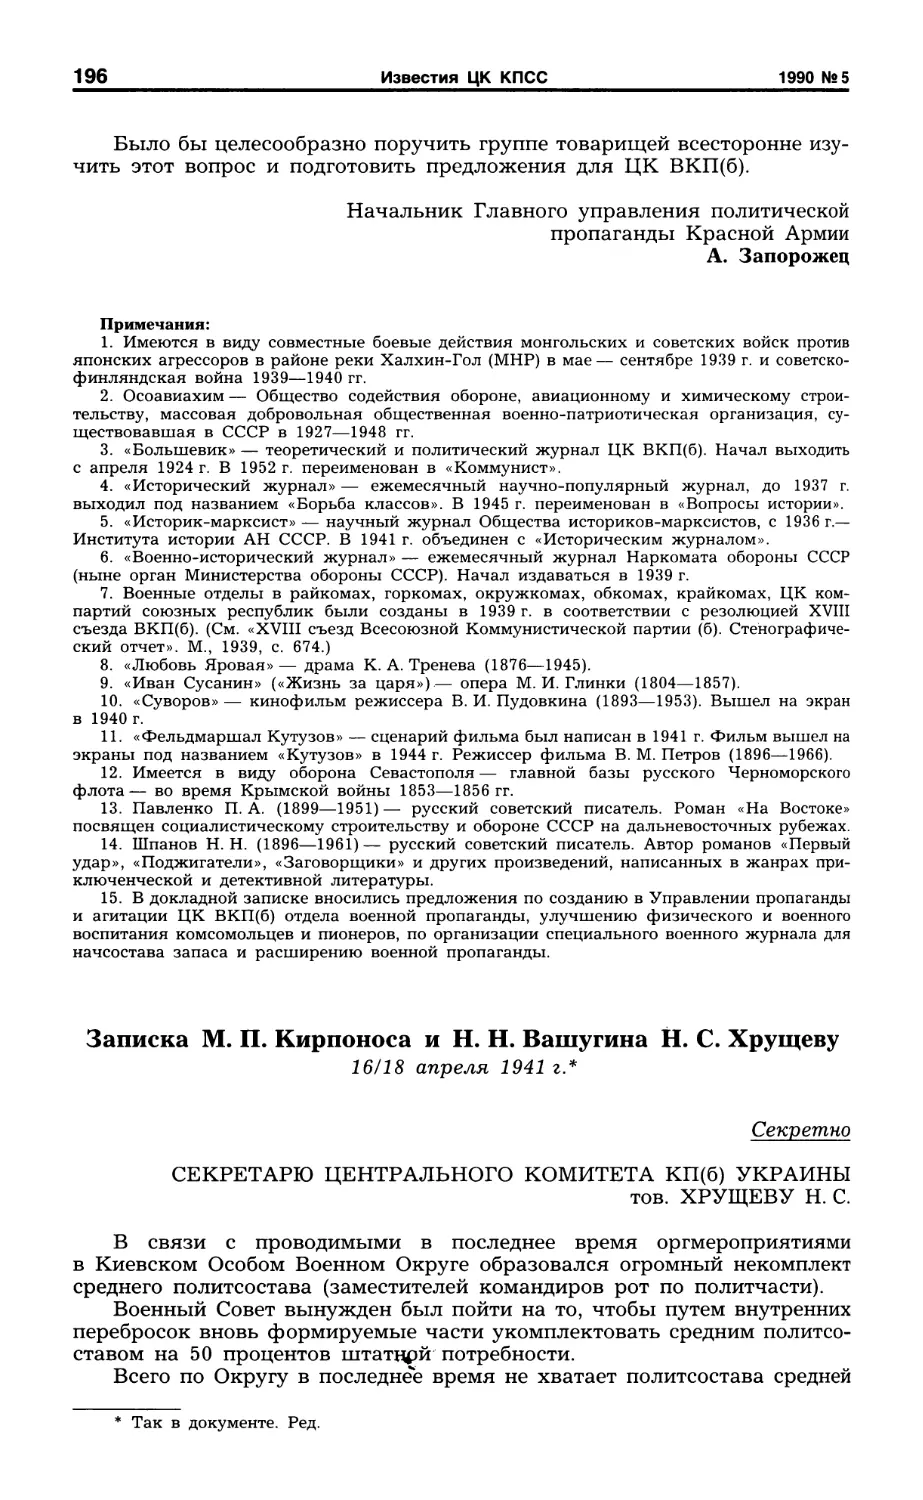 Записка М. П. Кирпоноса и Н. Н. Вашугина Н. С. Хрущеву. 16/18 апреля 1941 г